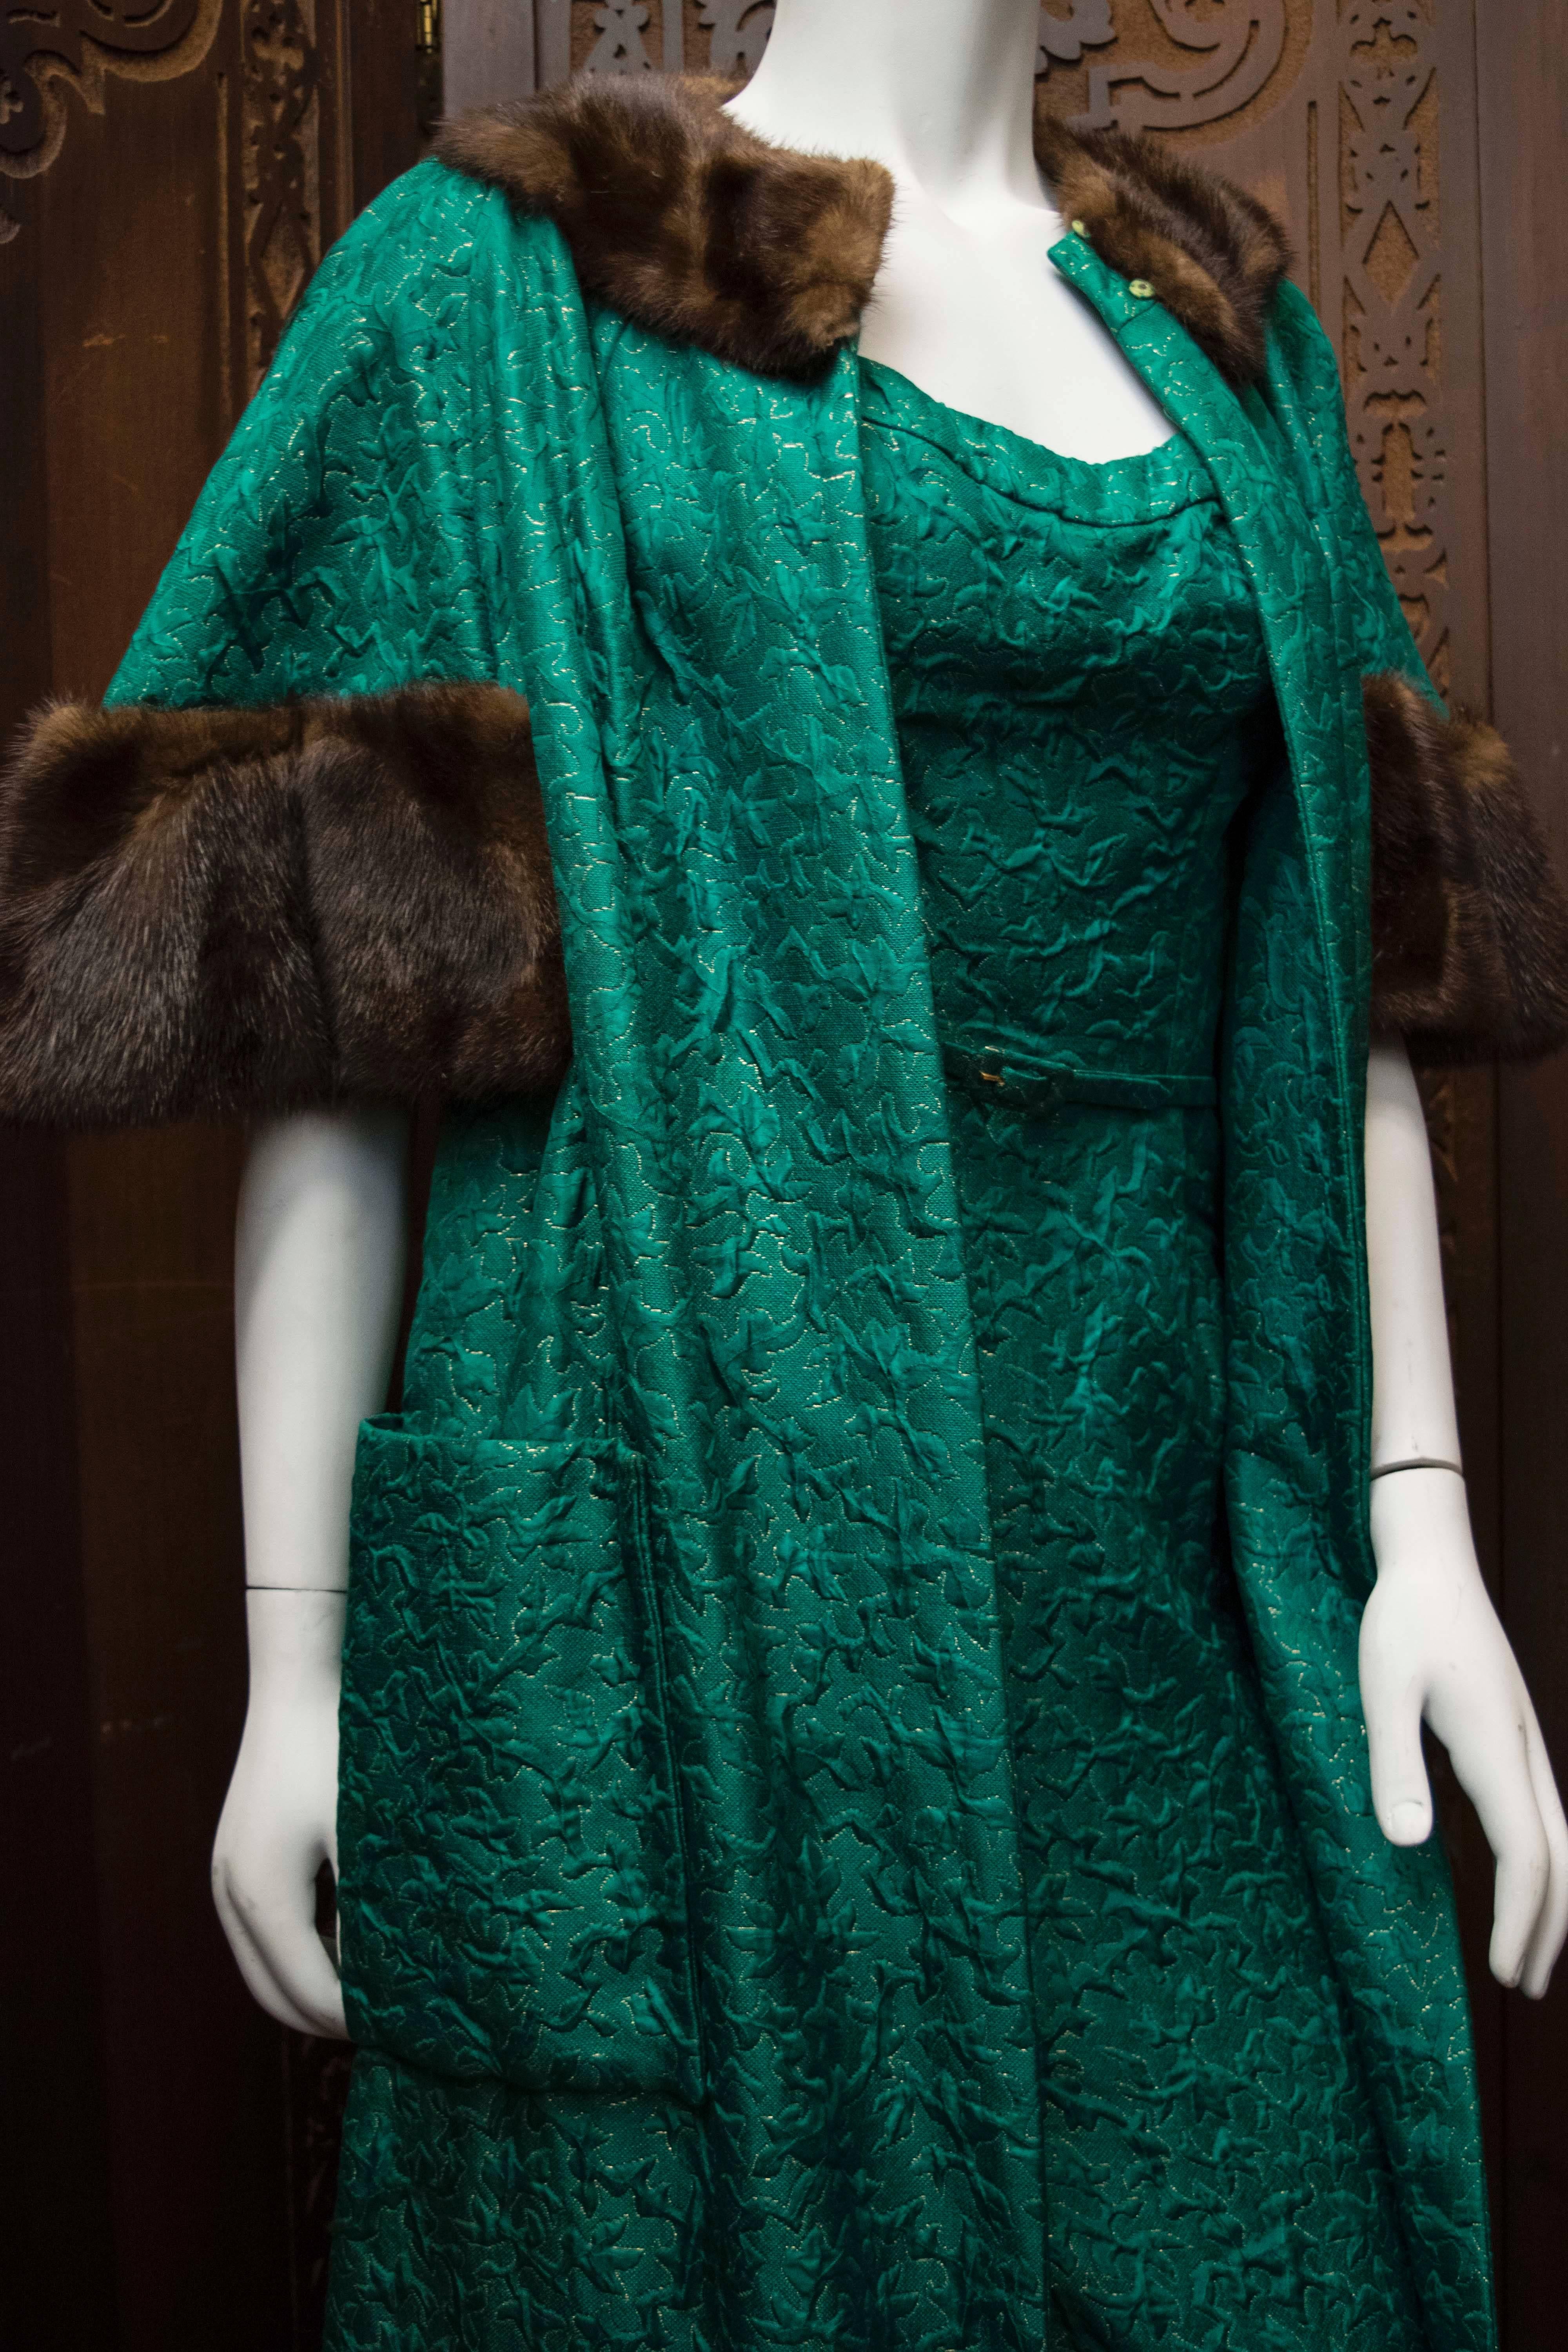 Women's 1960s Green Brocade Dress and Coat.